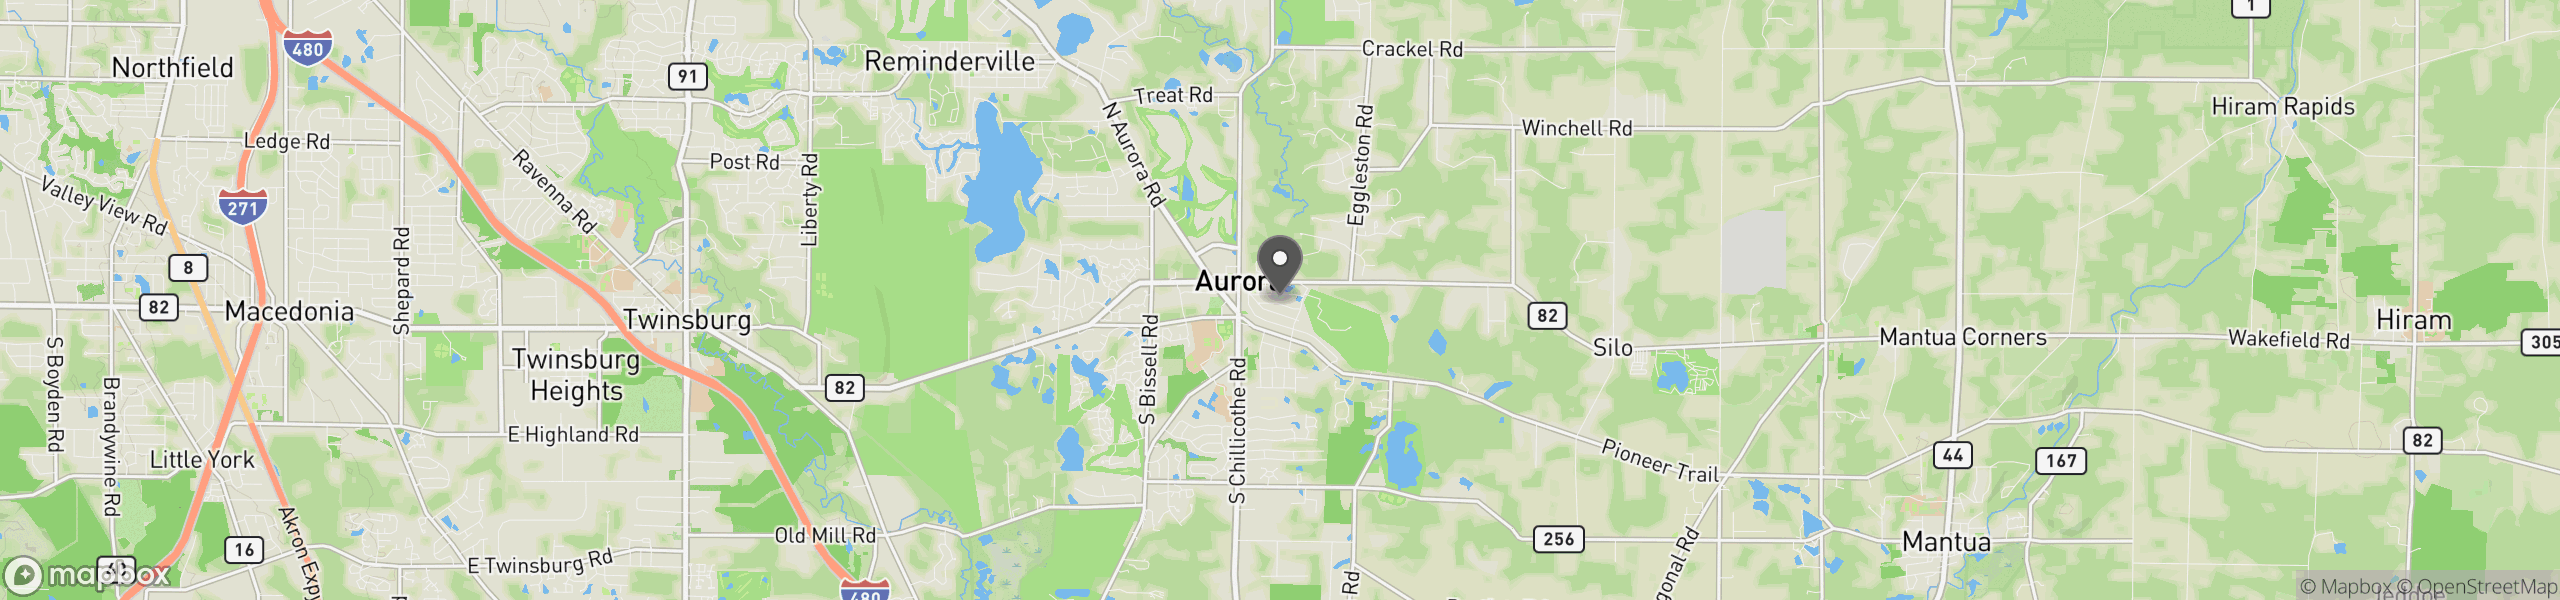 Aurora, OH 44202